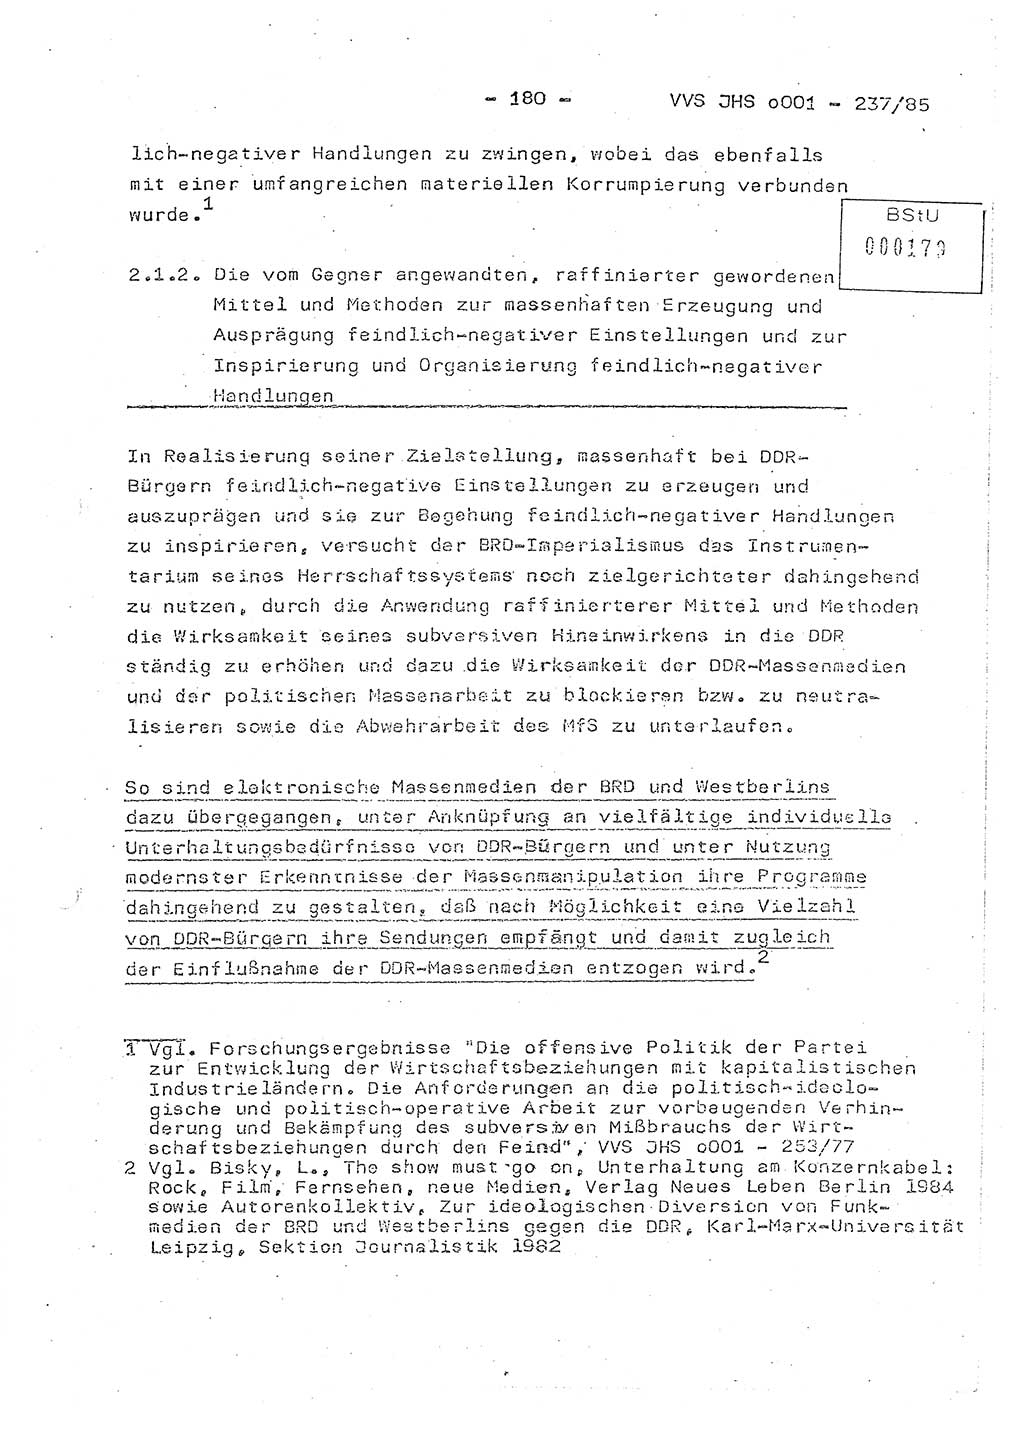 Dissertation Oberstleutnant Peter Jakulski (JHS), Oberstleutnat Christian Rudolph (HA Ⅸ), Major Horst Böttger (ZMD), Major Wolfgang Grüneberg (JHS), Major Albert Meutsch (JHS), Ministerium für Staatssicherheit (MfS) [Deutsche Demokratische Republik (DDR)], Juristische Hochschule (JHS), Vertrauliche Verschlußsache (VVS) o001-237/85, Potsdam 1985, Seite 180 (Diss. MfS DDR JHS VVS o001-237/85 1985, S. 180)